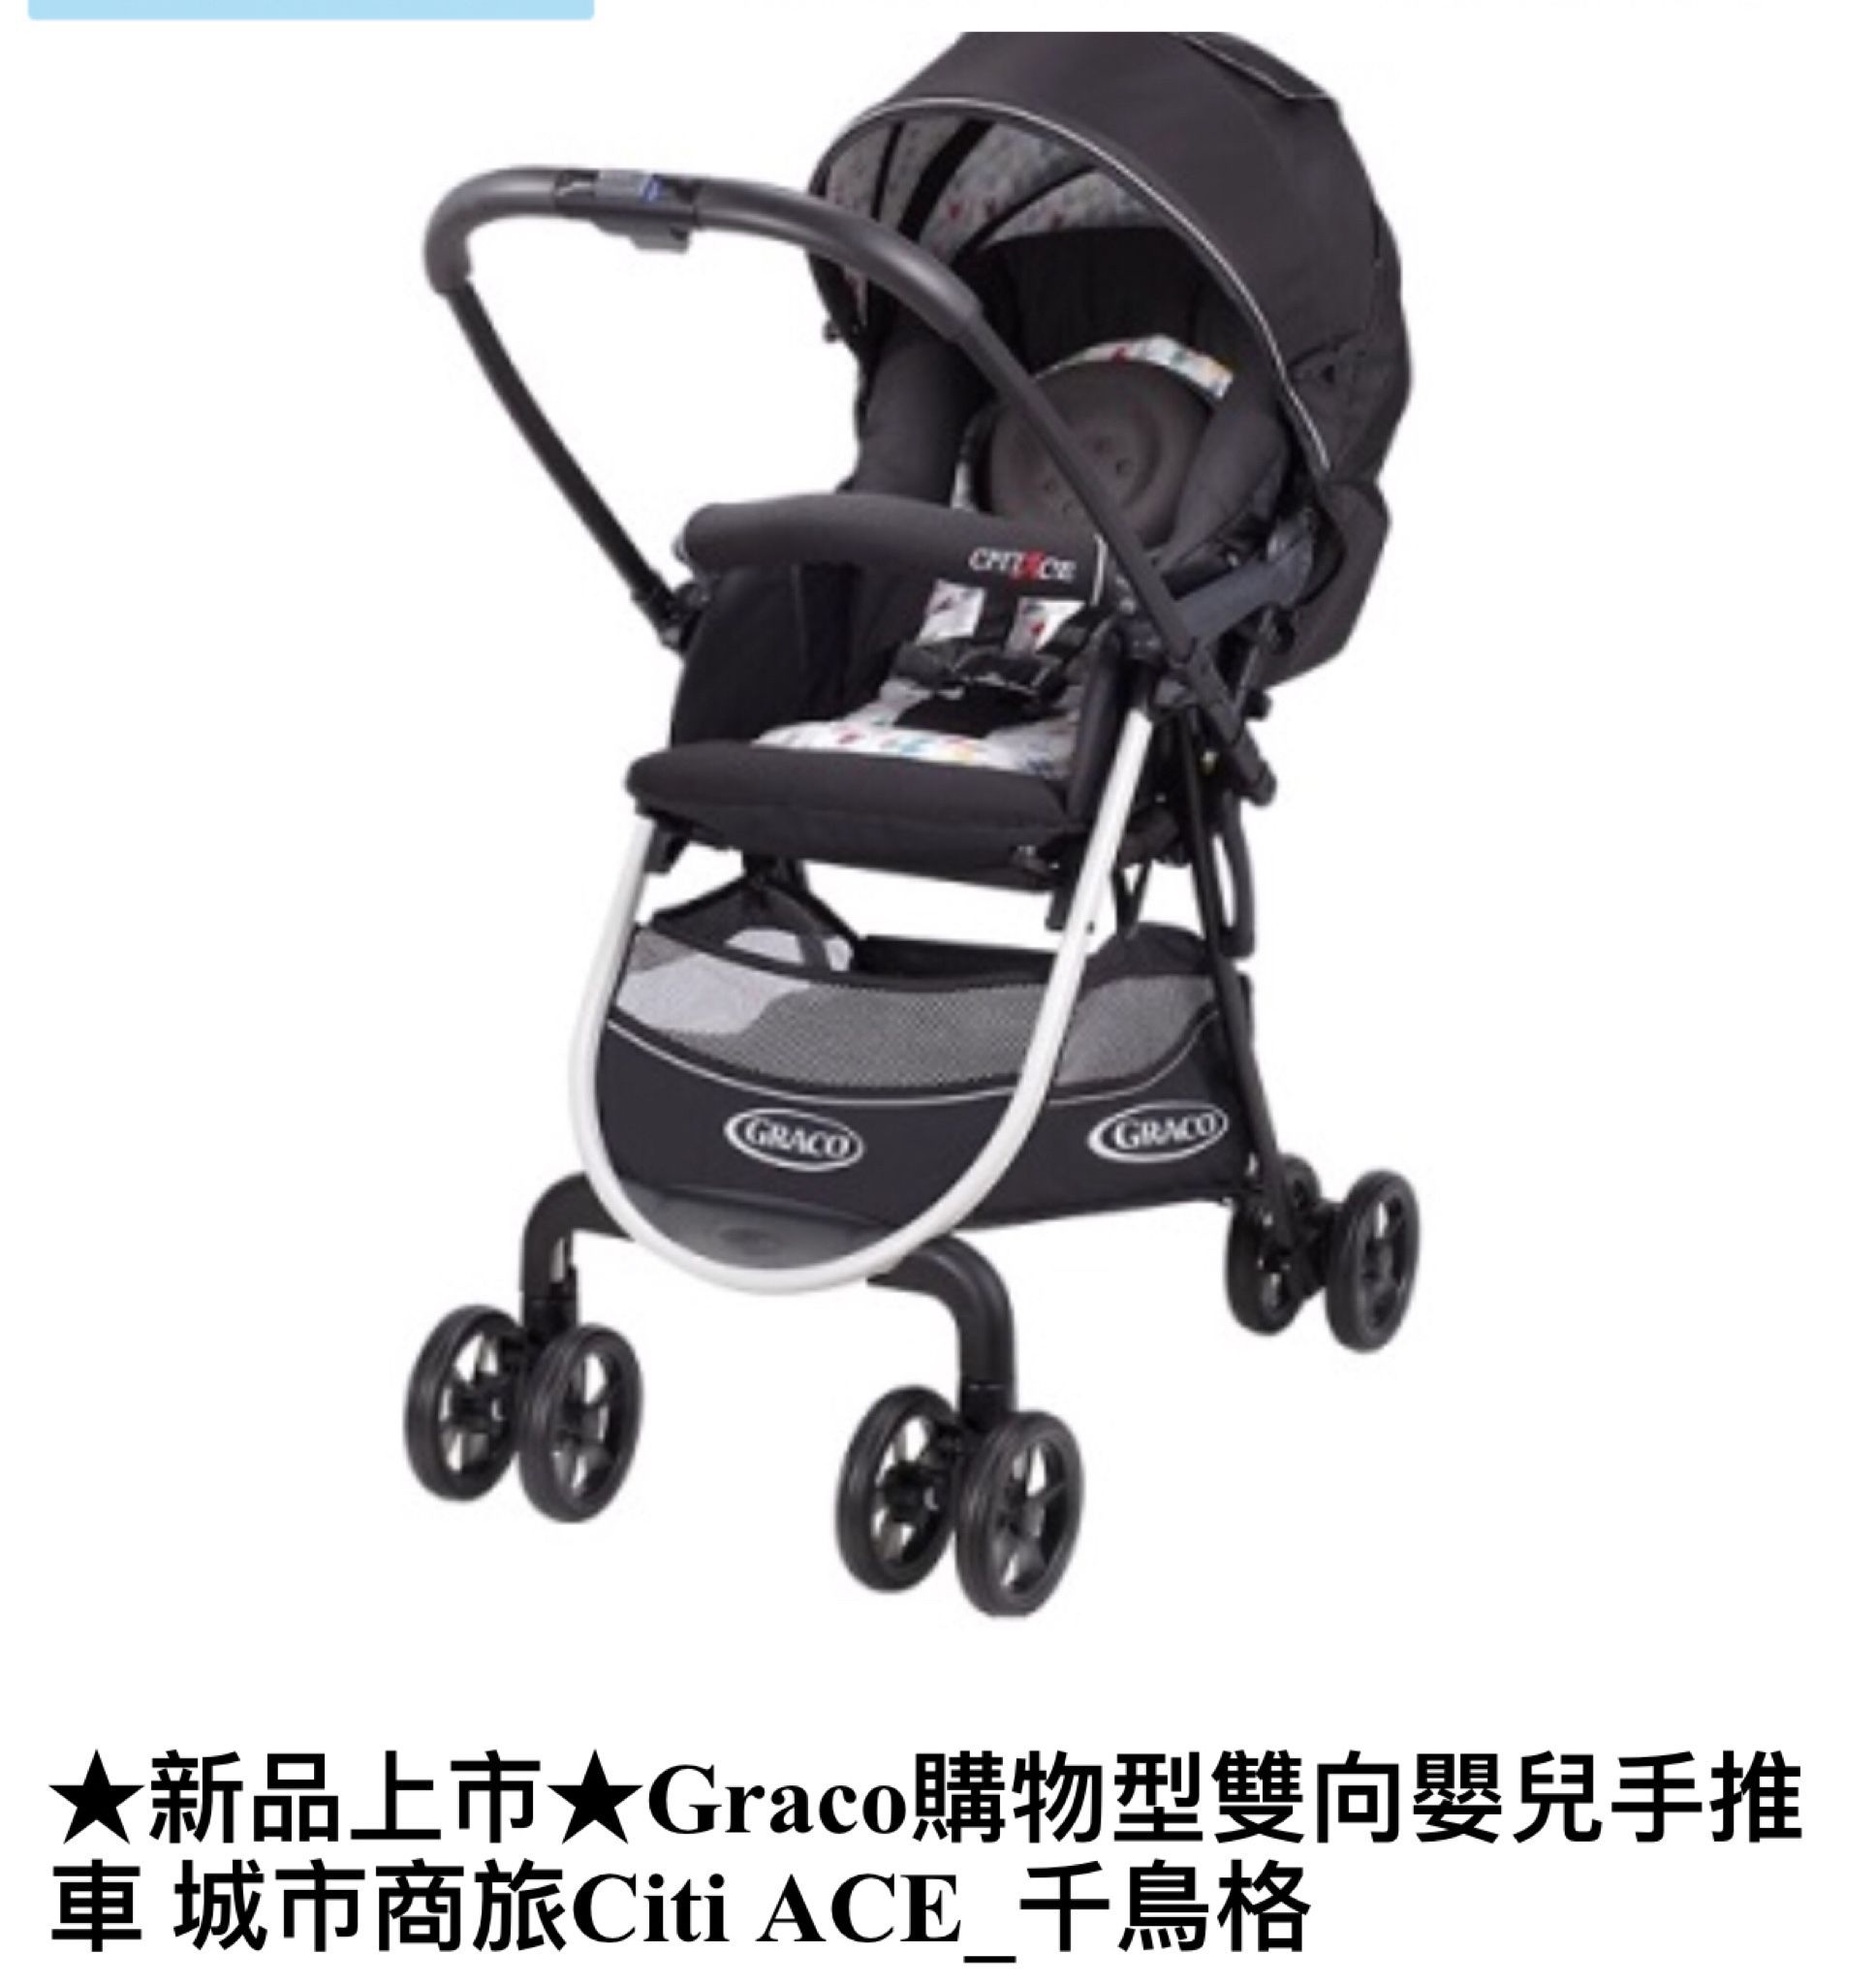 徵二手Graco嬰兒手推車 限台南地區